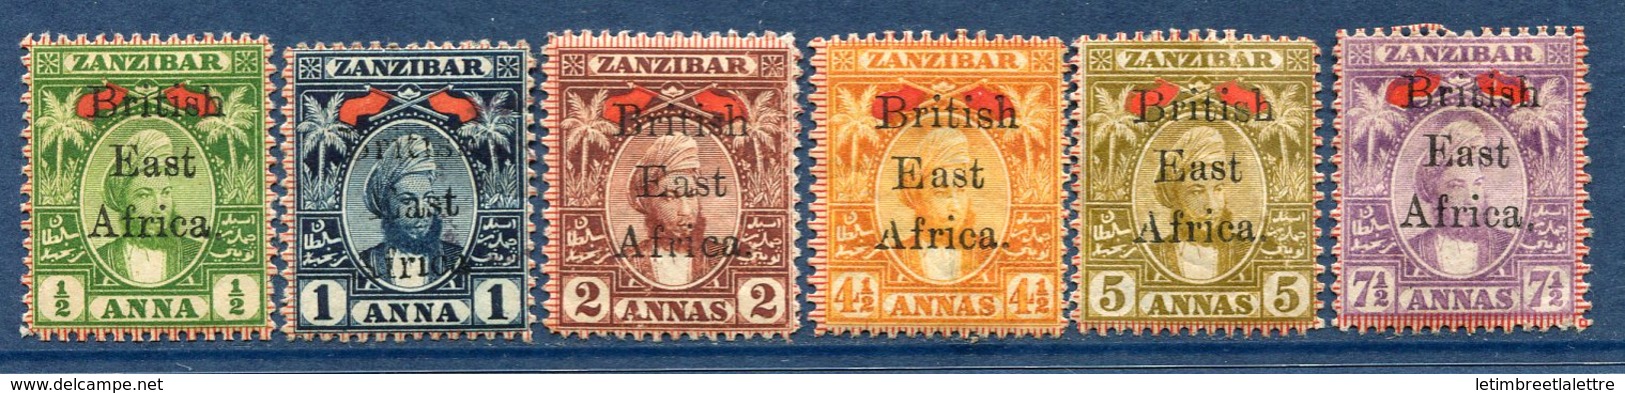 ⭐ Afrique Orientale Britannique - YT N° 84 à 89 * - Neuf Avec Charnière - ( Issus De La Série N° 84 à 91 ) ⭐ - Britisch-Ostafrika